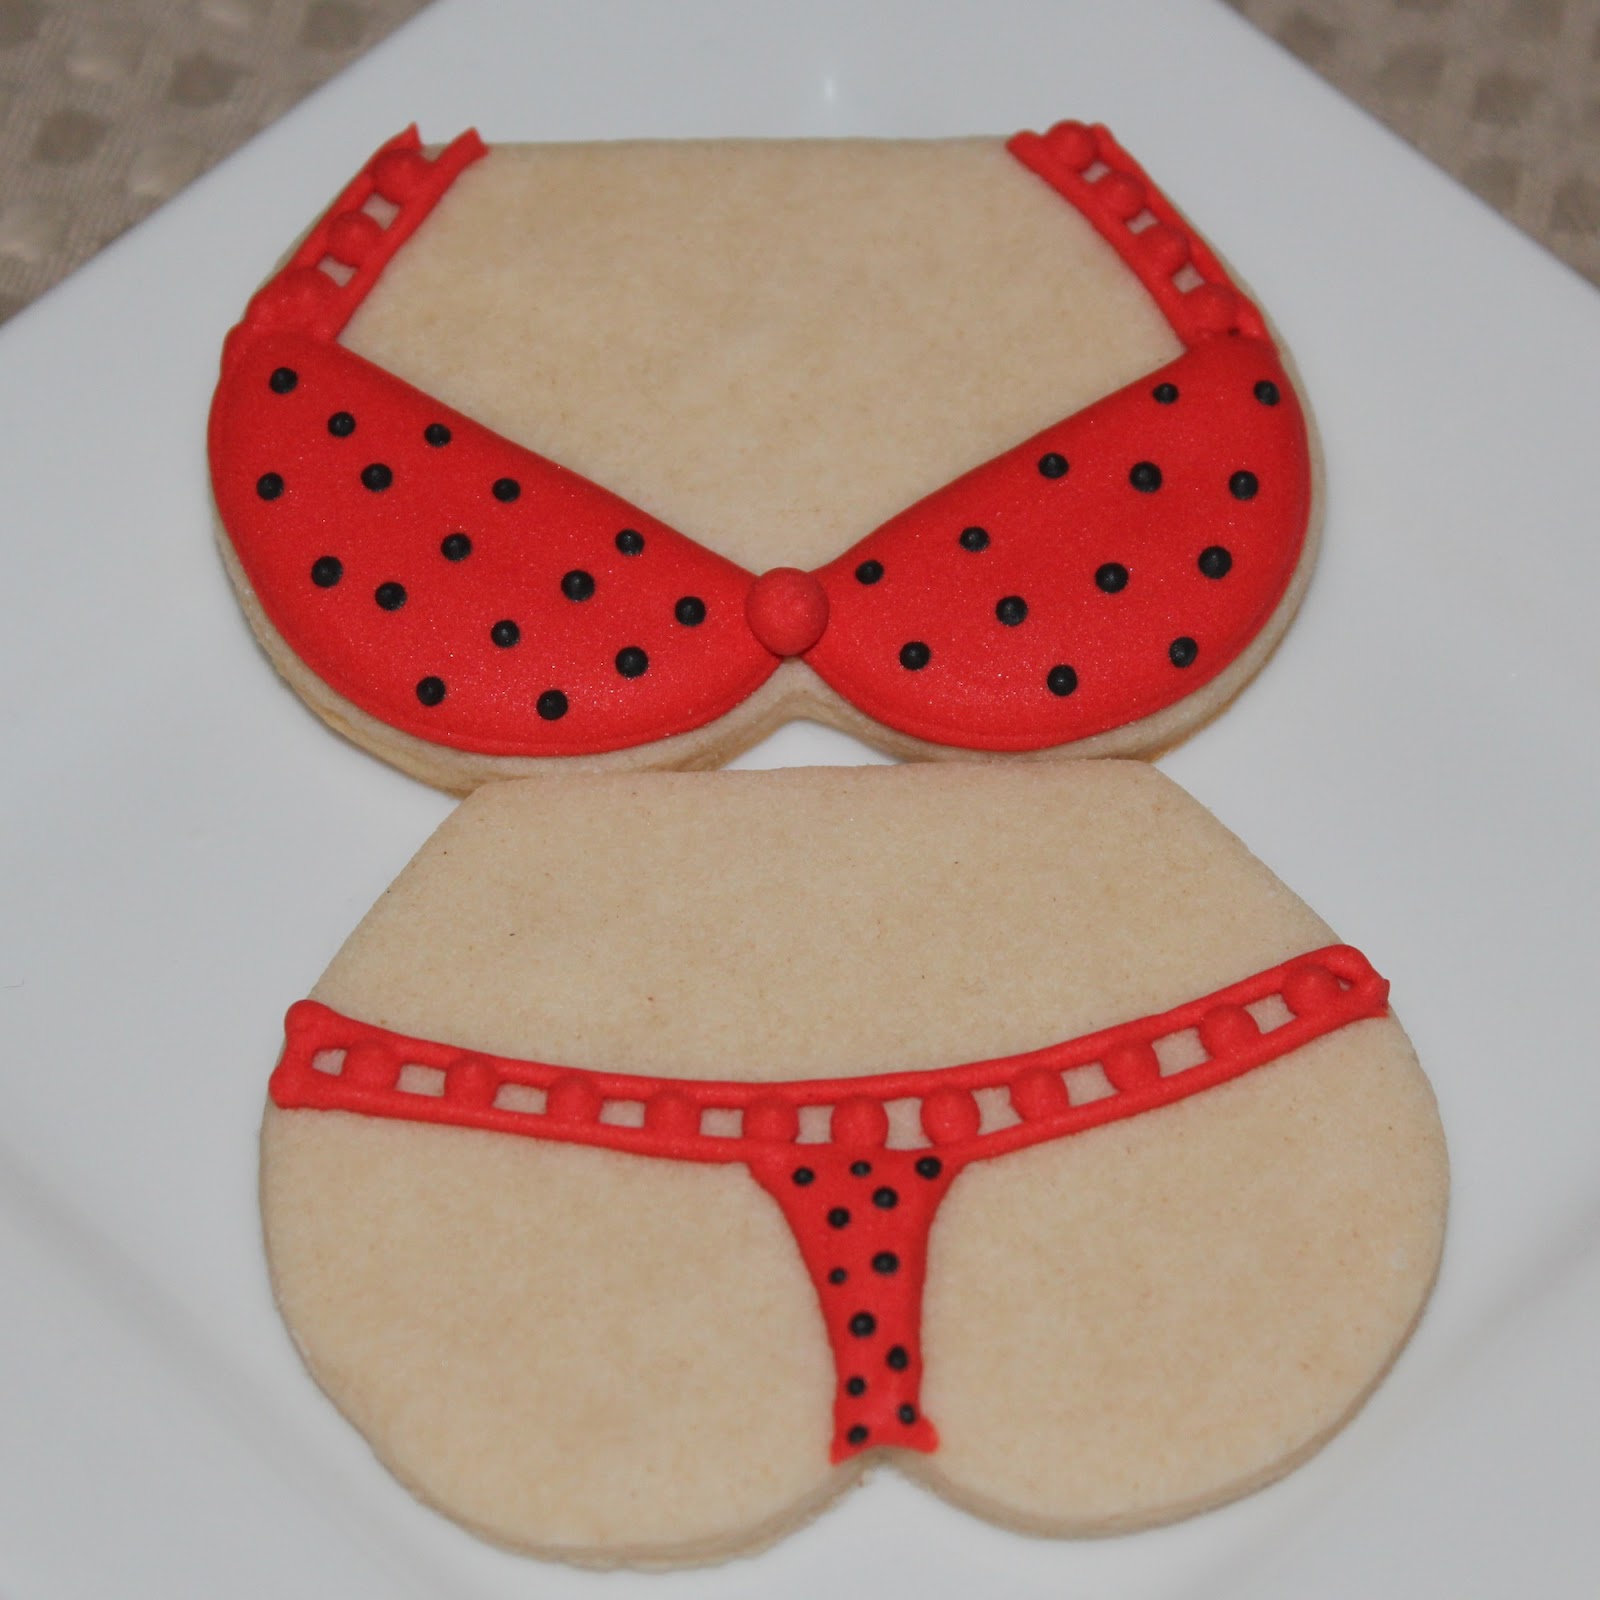 Baking in Heels: Valentine's Lingerie Cookies